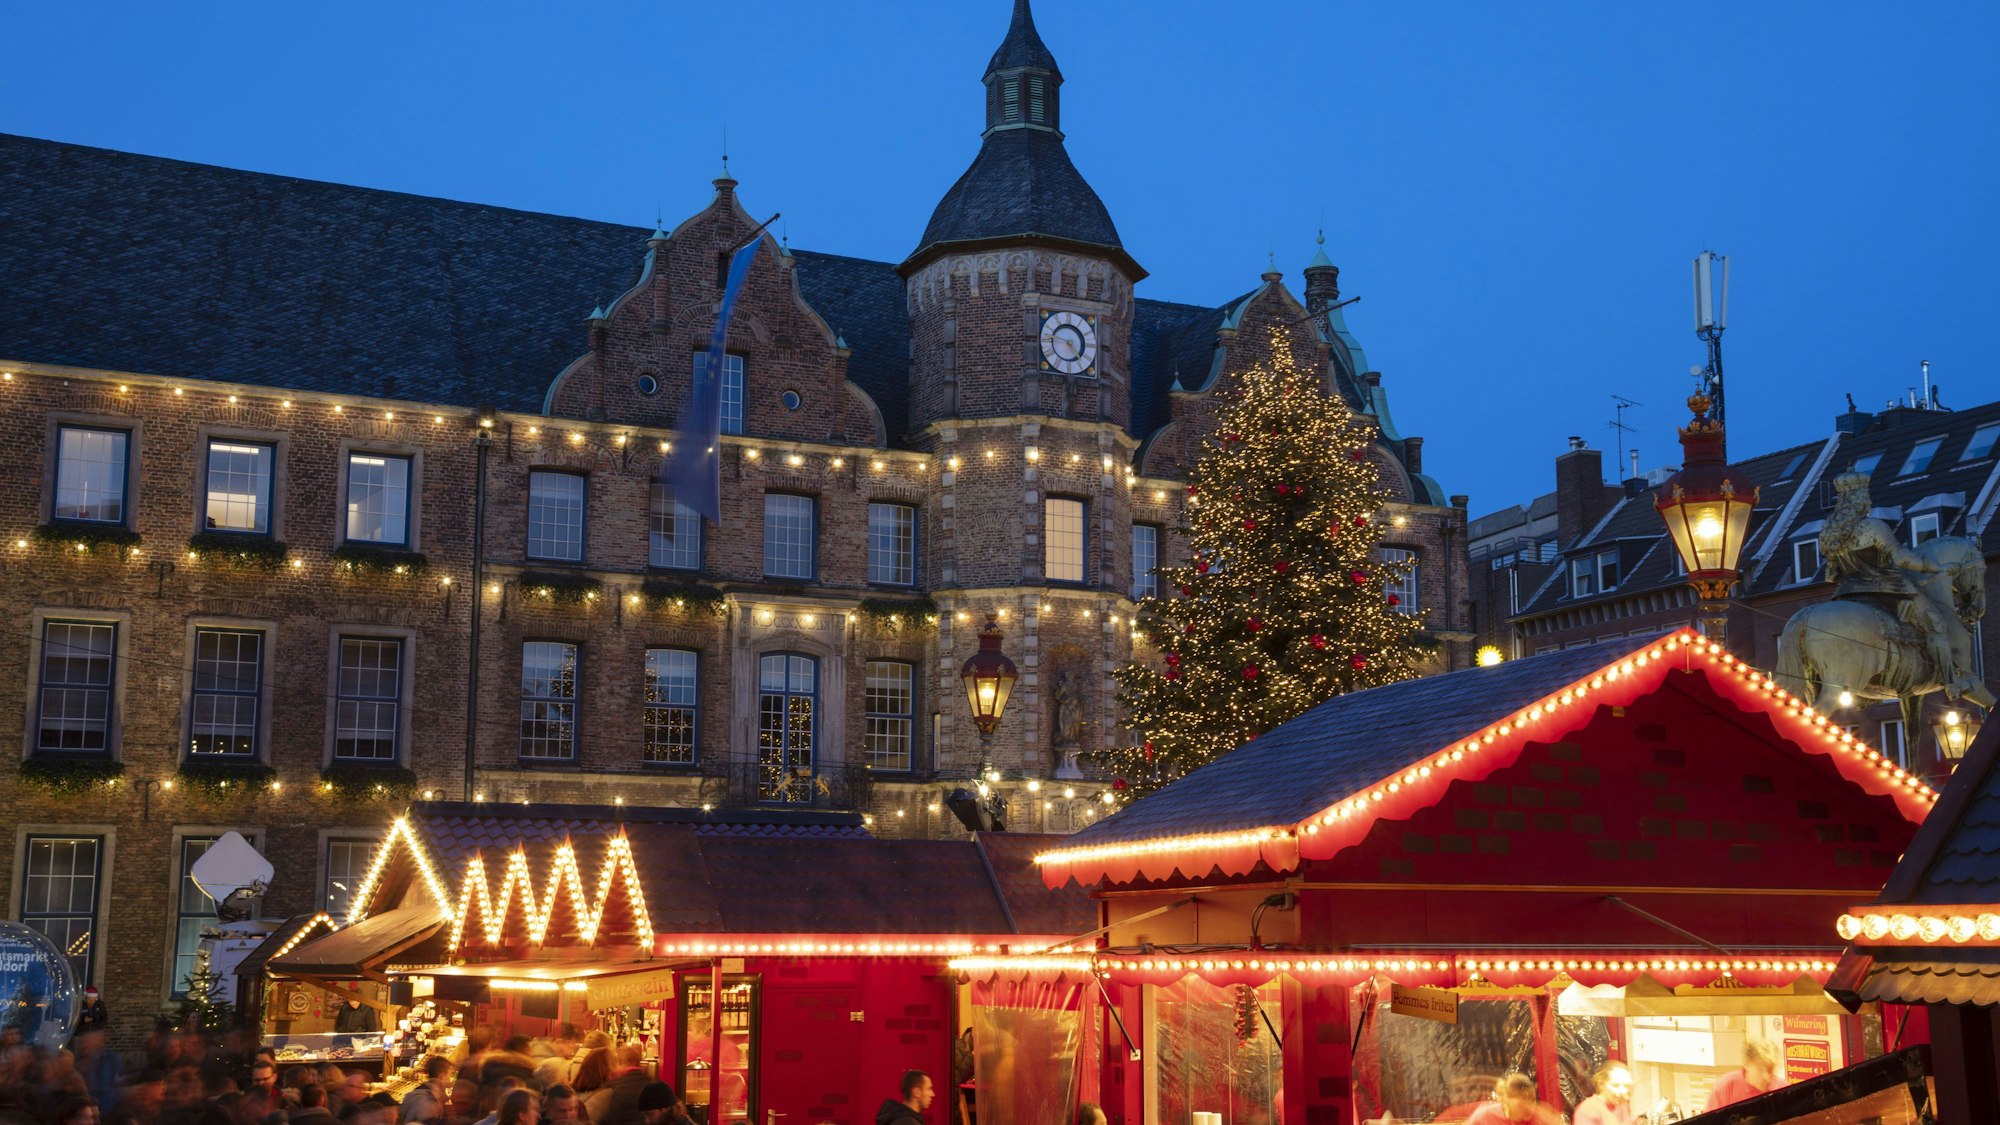 Weihnachtsmarkt-Stände vor dem Rathaus in Düsseldorf. Im Hintergrund steht ein Weihnachtsbaum.